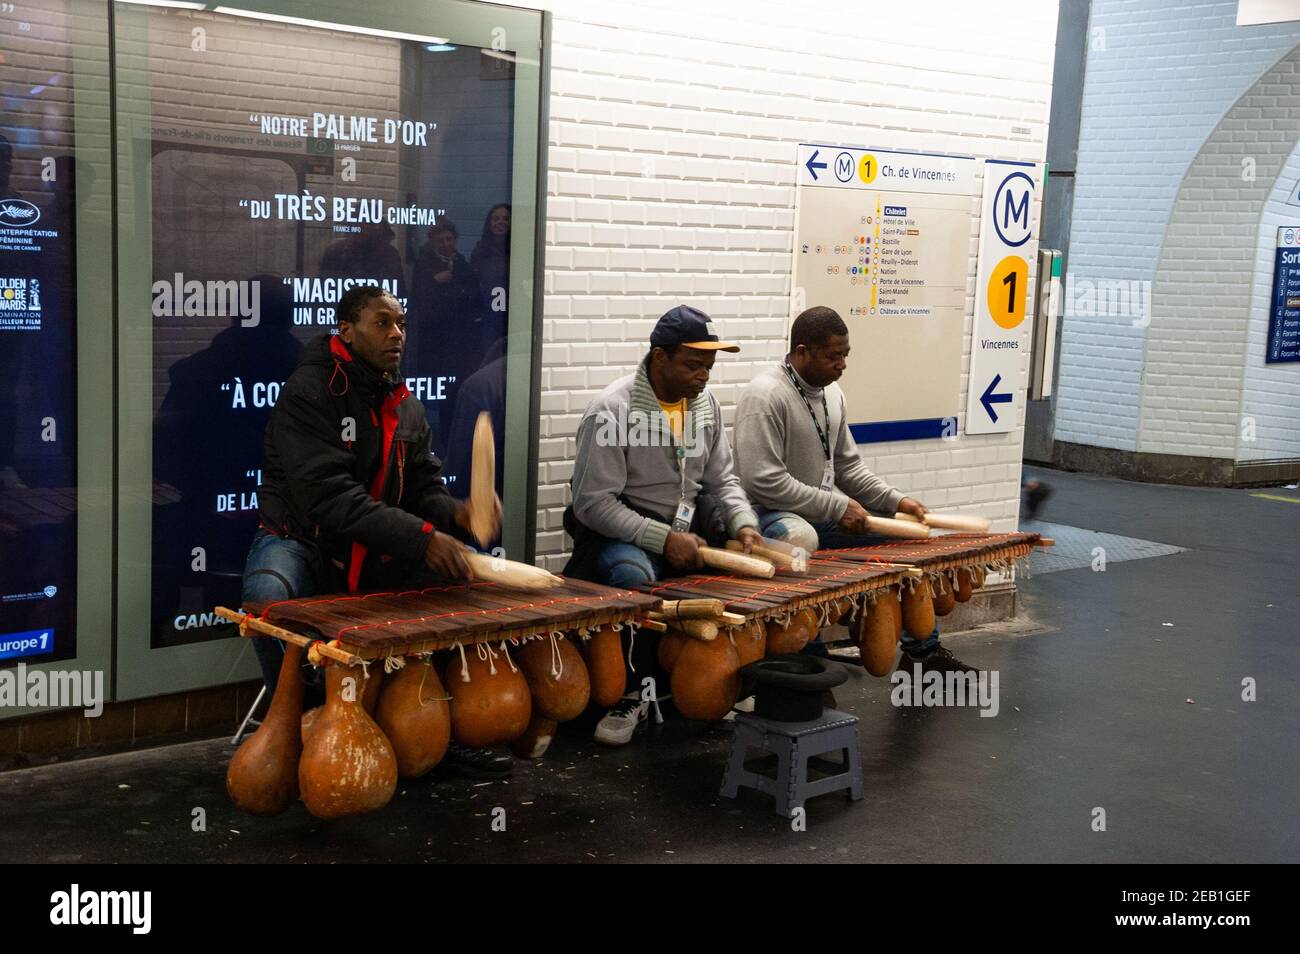 PARIS, FRANCE - 14 JANVIER 2018 : les musiciens de rue jouent au balafon (genre de xylophone avec des gourdes de calabash originaires du Mali) dans le métro parisien. Banque D'Images